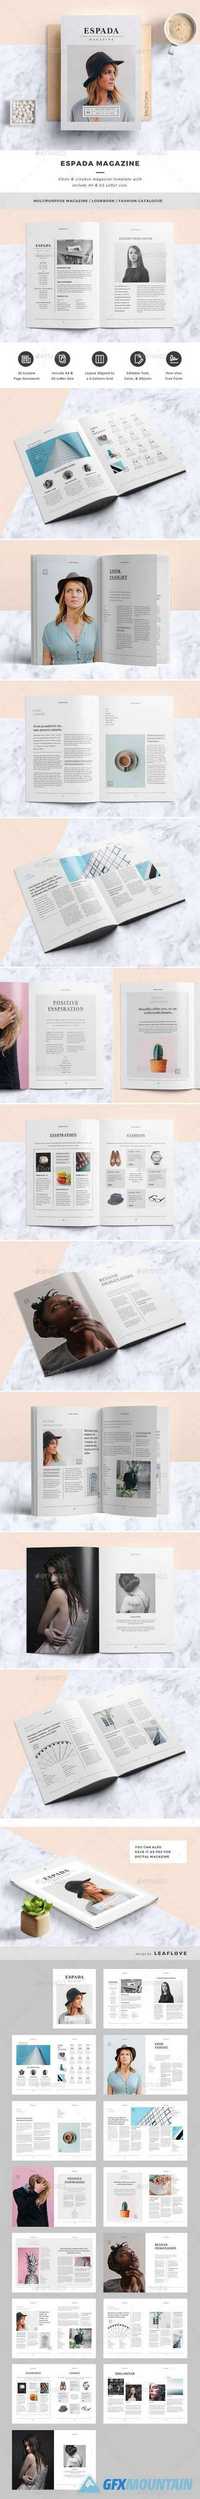 GraphicRiver - Magazine / Clean & Creative Magazine Template 16813733